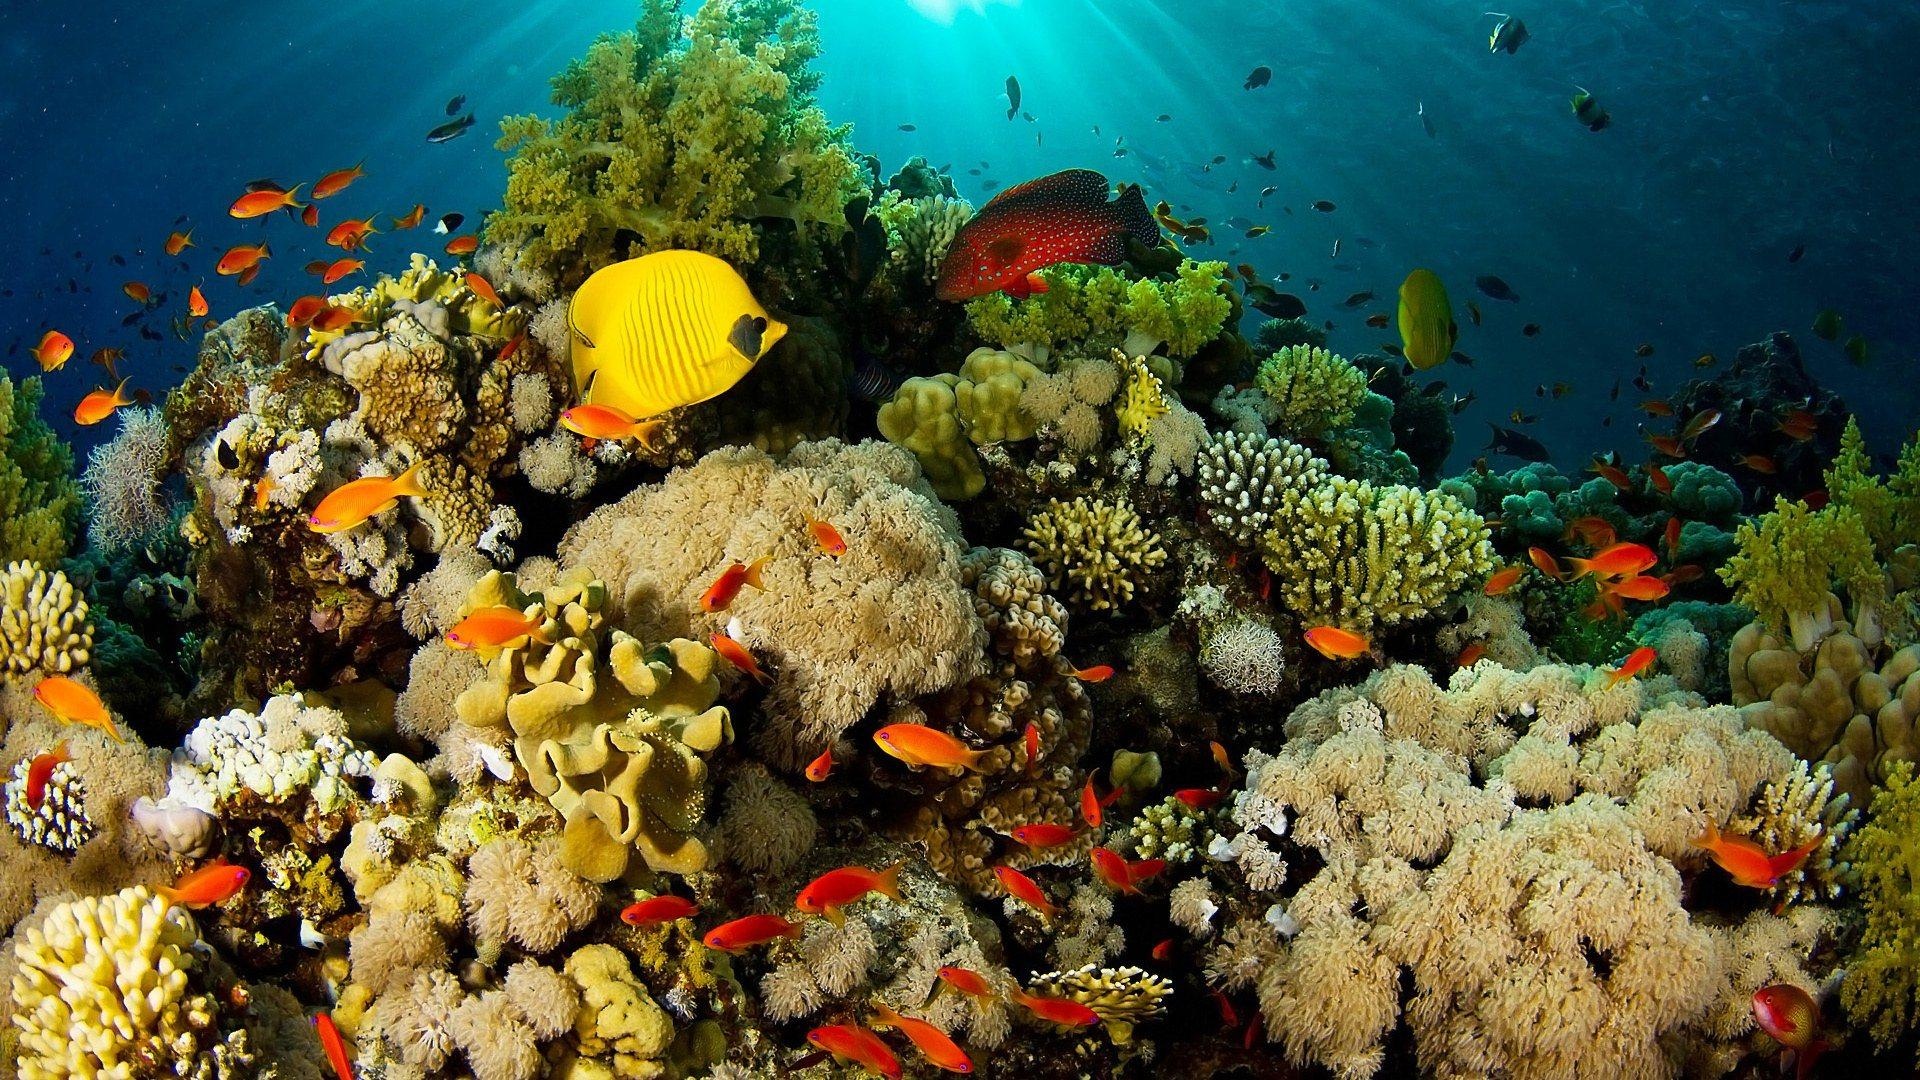 珊瑚礁异国风情鱼壁纸高清原图查看